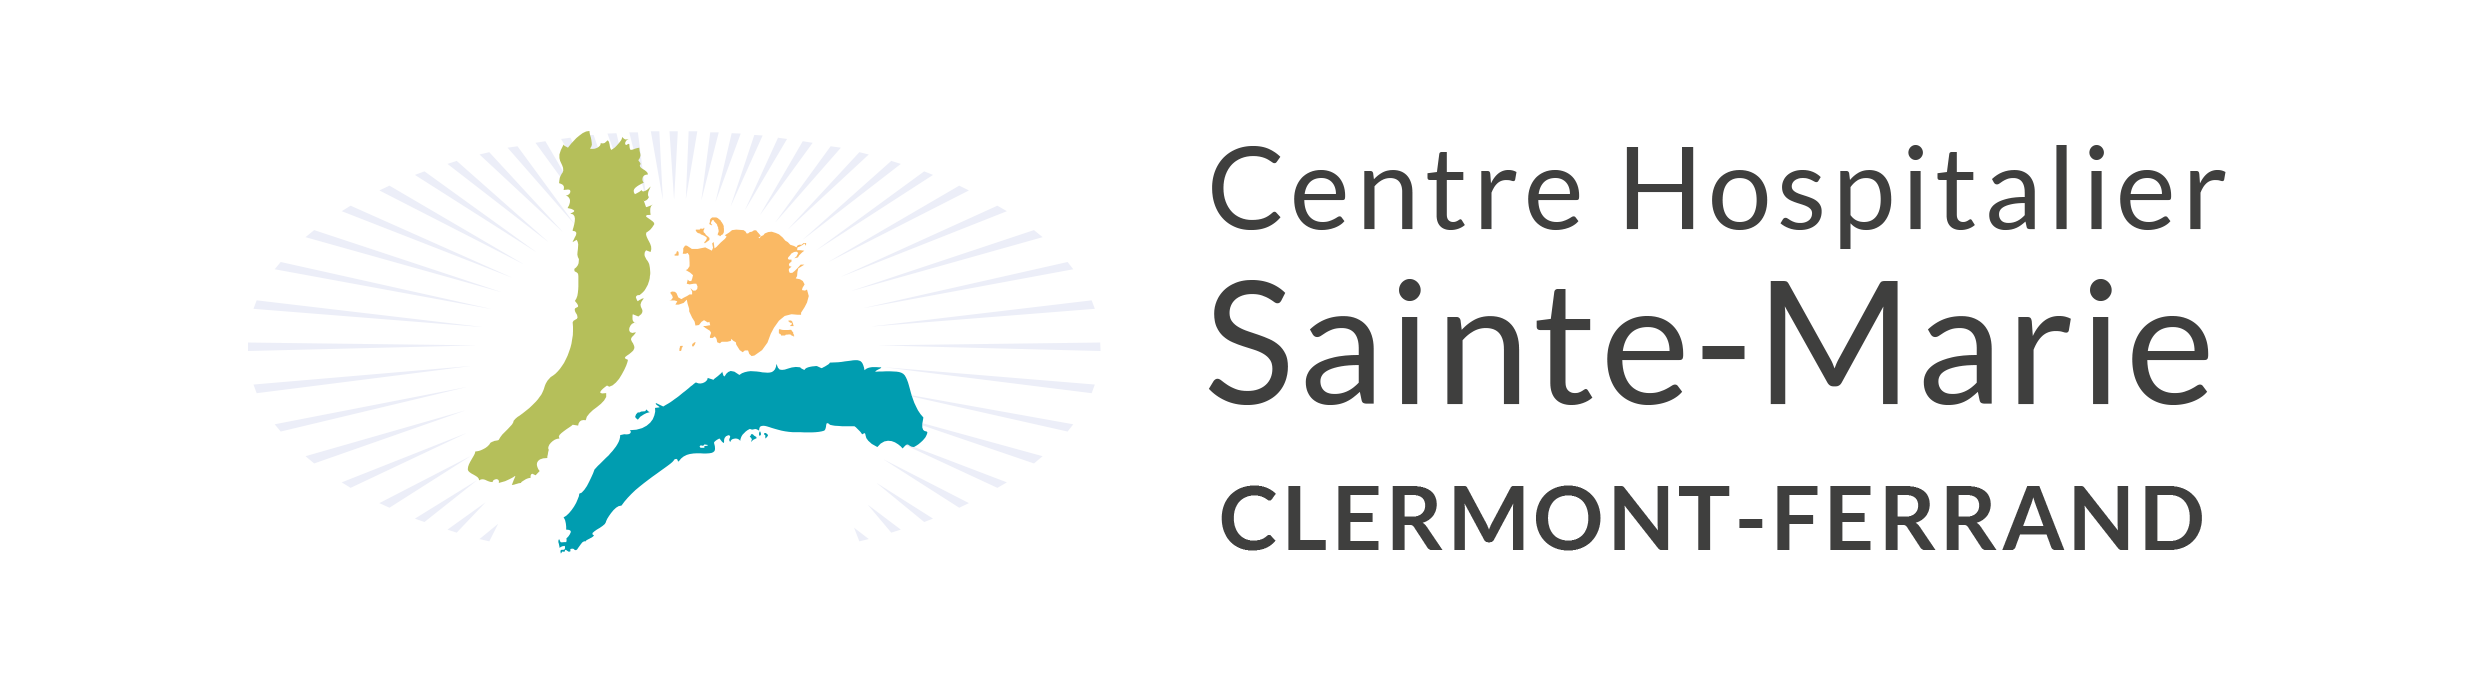 Centre Hospitalier Sainte-Marie Clermont-Ferrand